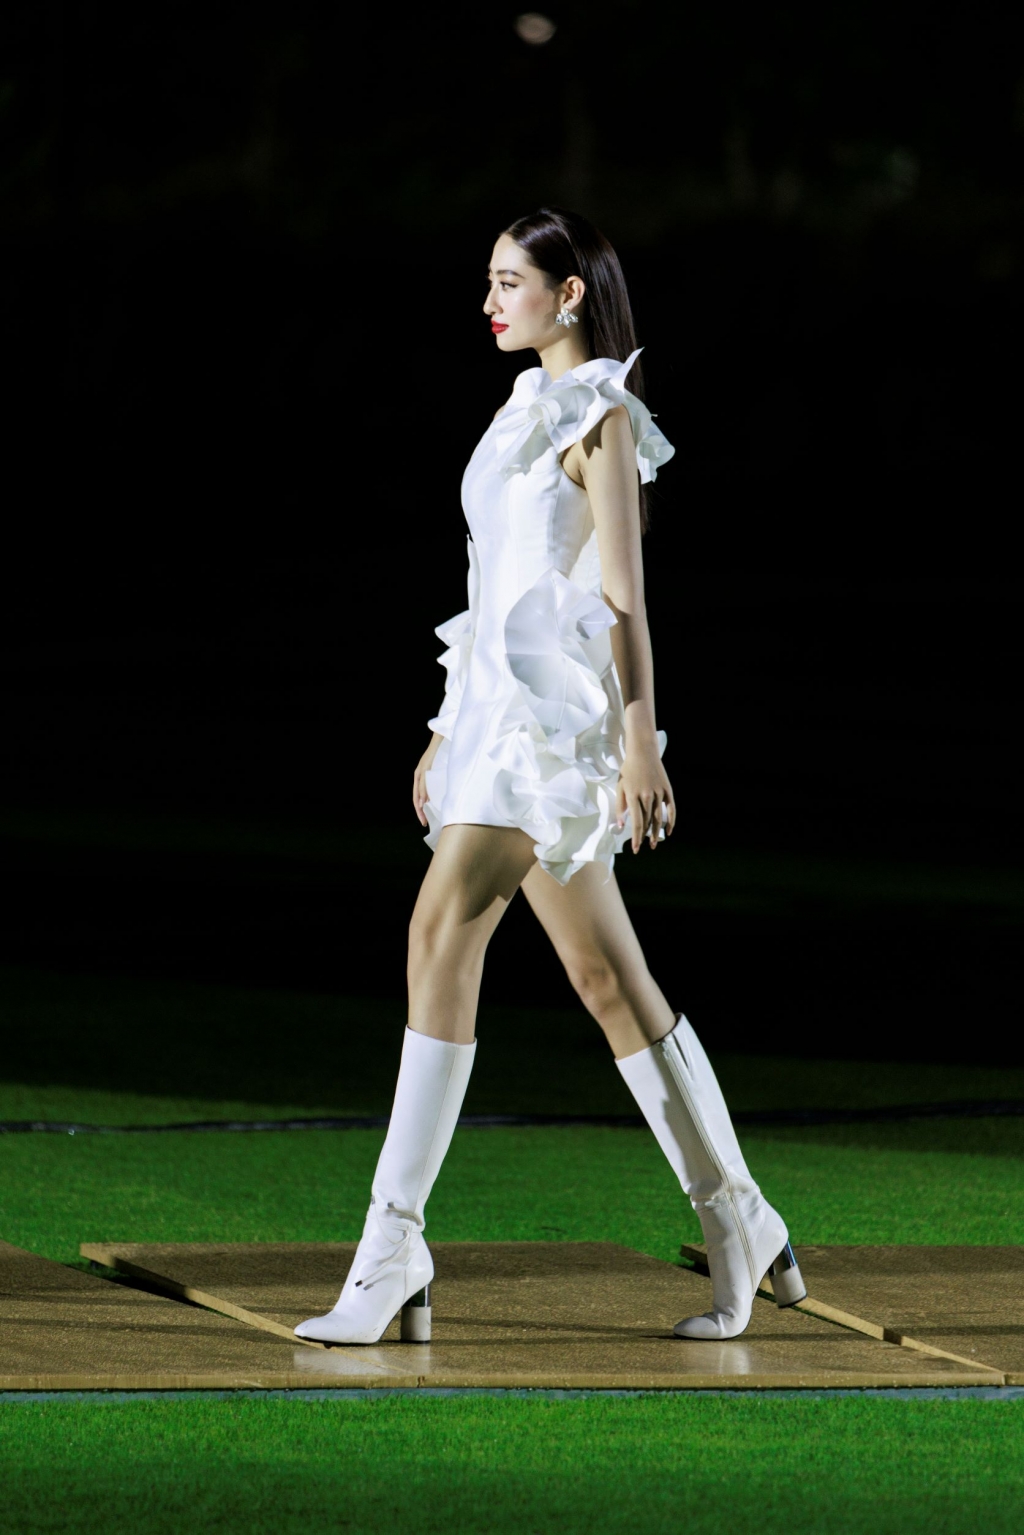 Đỗ Mỹ Linh “ôm” giải, Lương Thùy Linh catwalk thần thái trong lễ bế mạc giải golf Strong Vietnam